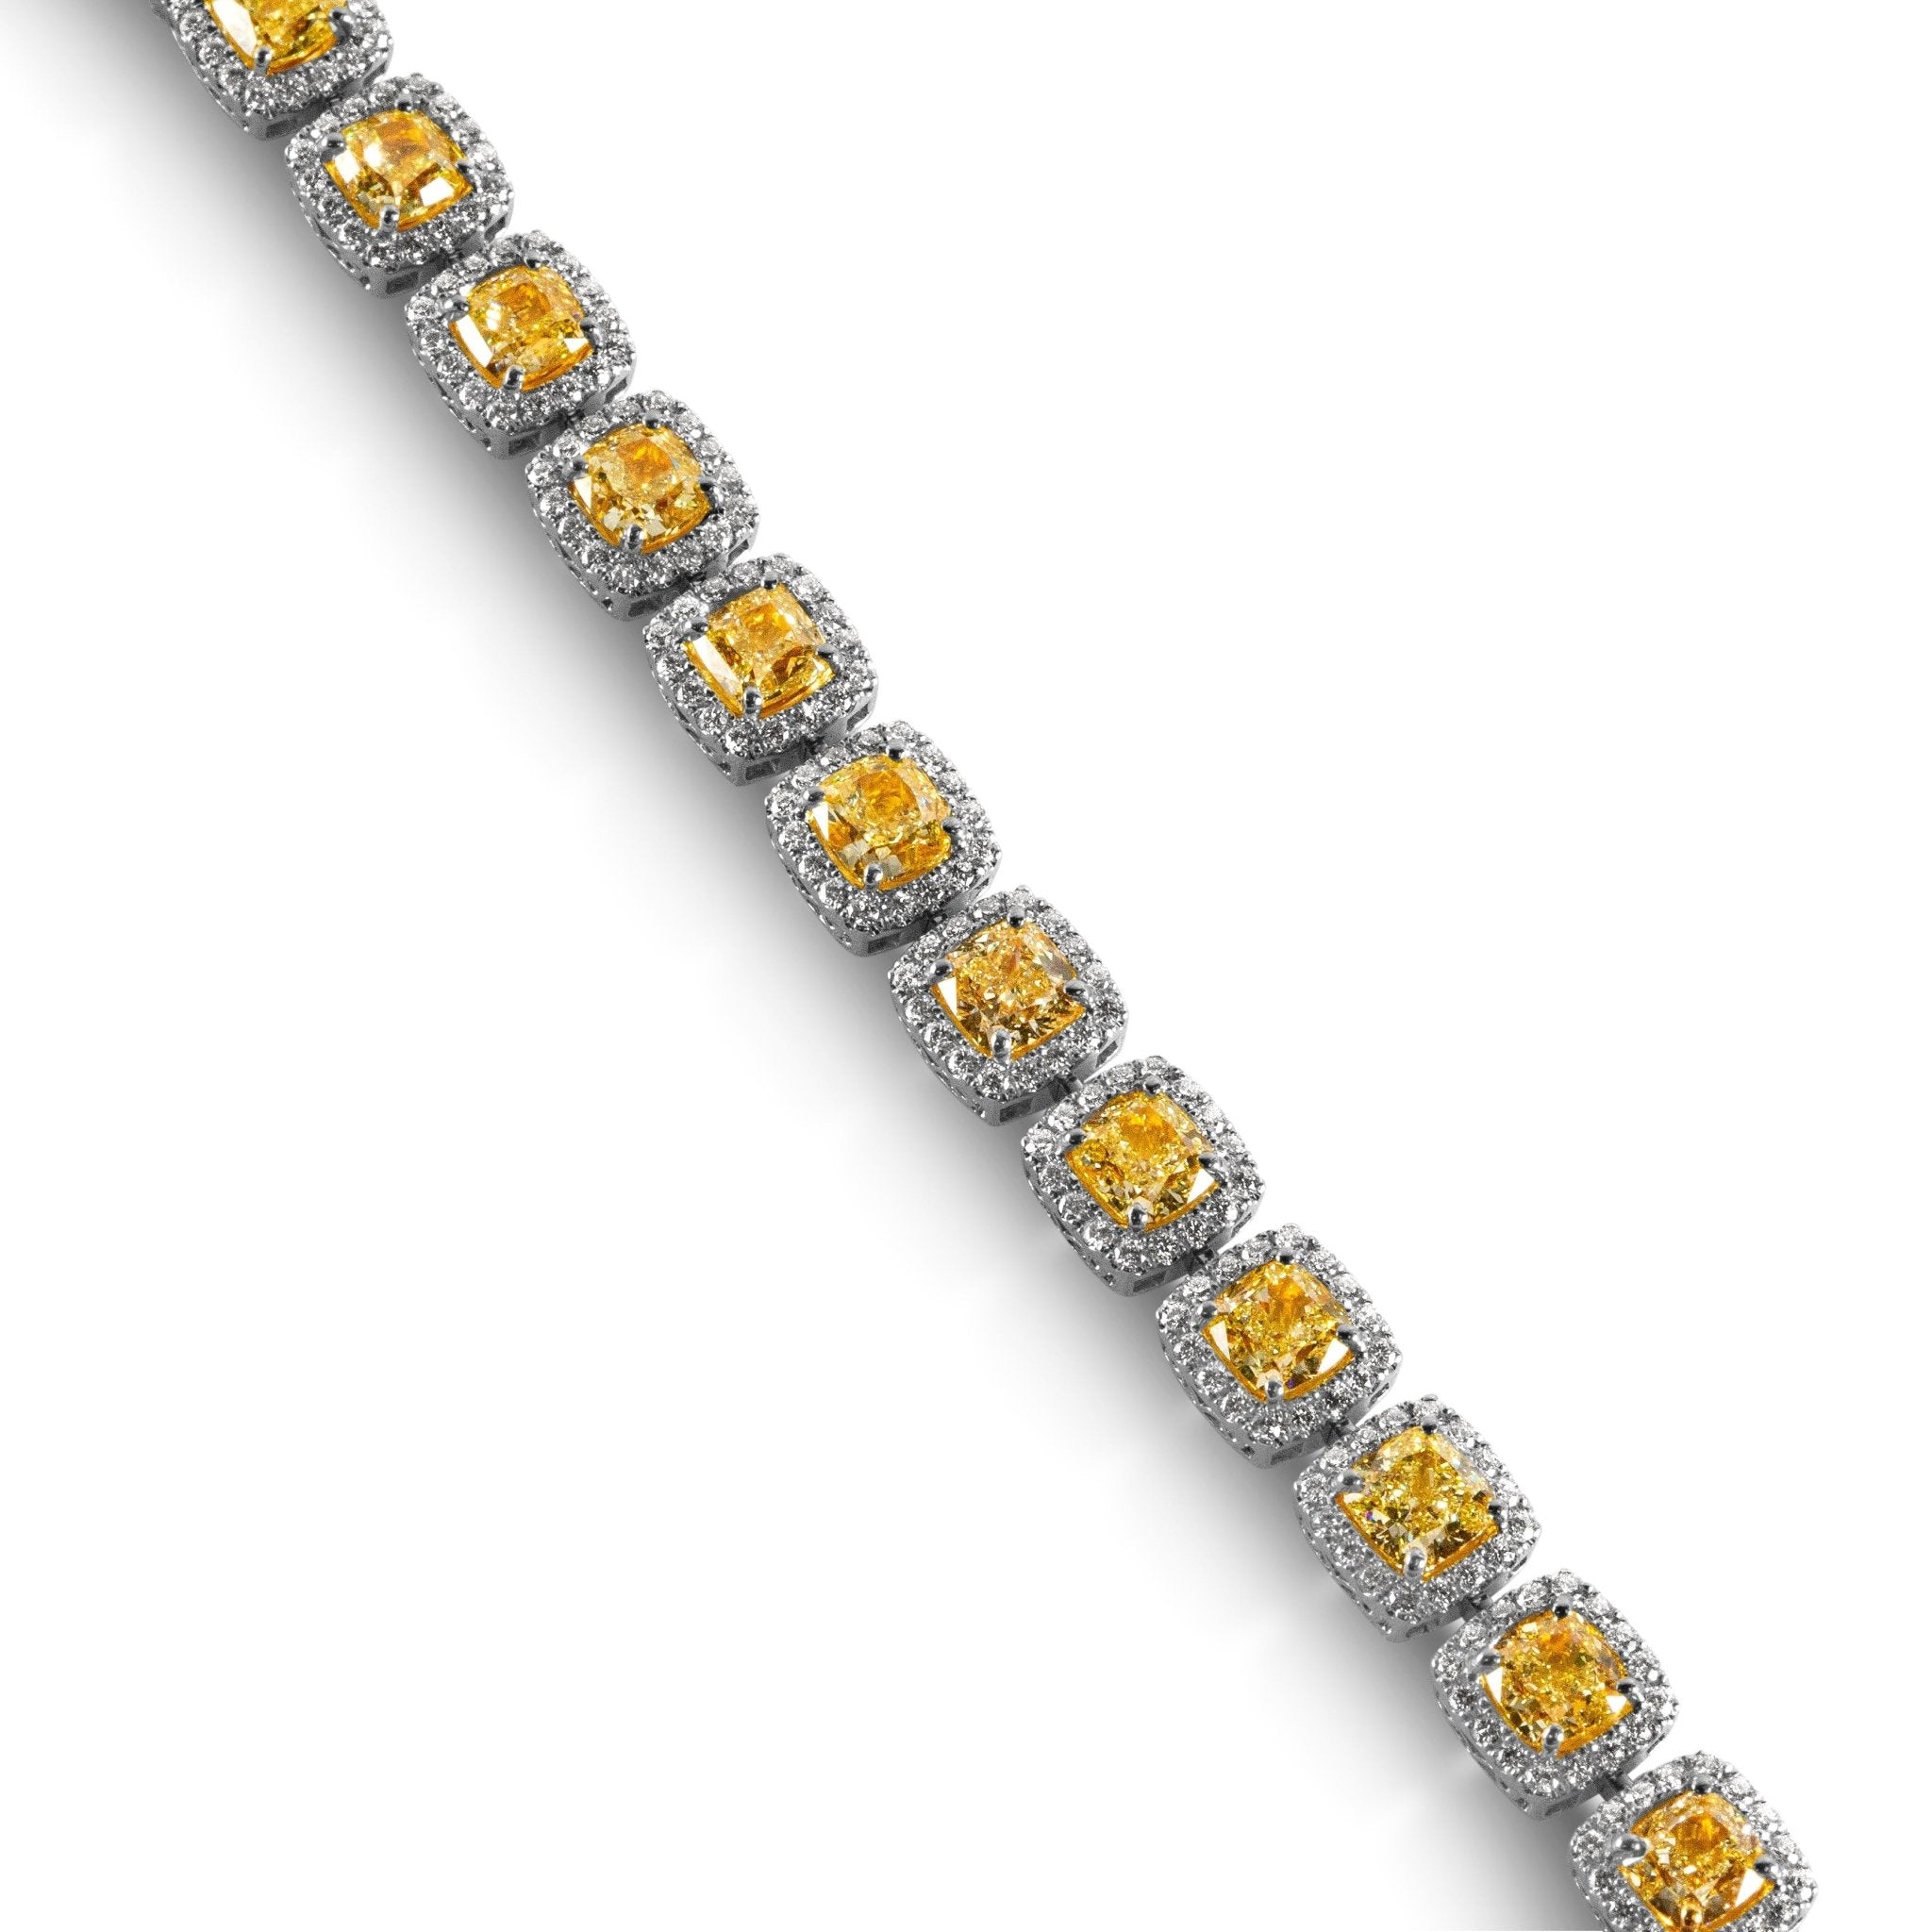 Fancy Yellow Cushion Diamond Bracelet with Halo - Bracelets - Leviev Diamonds